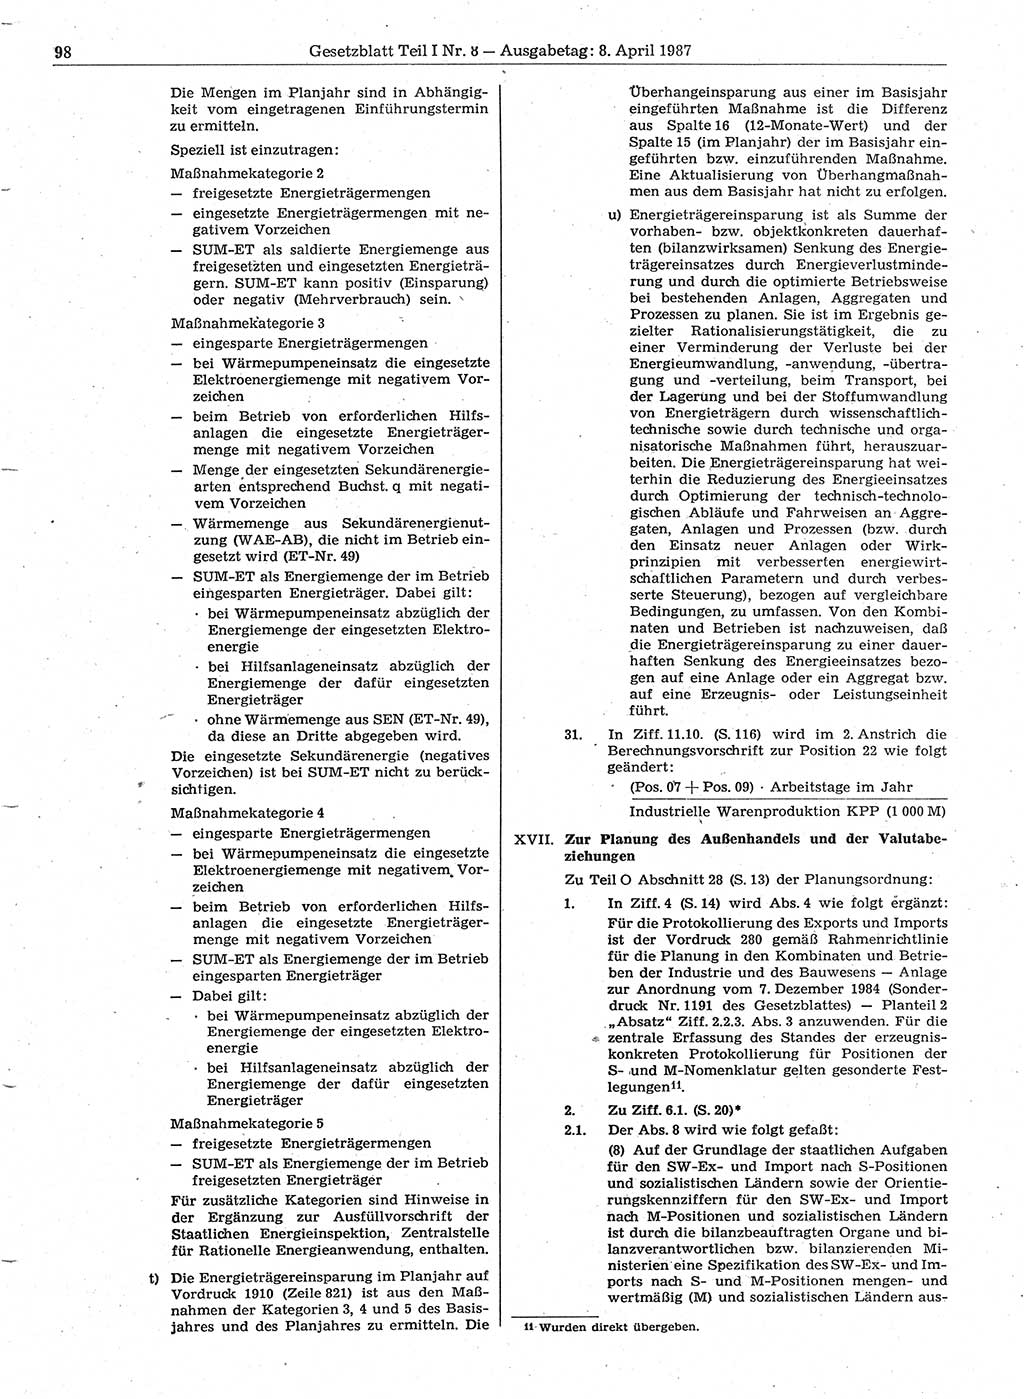 Gesetzblatt (GBl.) der Deutschen Demokratischen Republik (DDR) Teil Ⅰ 1987, Seite 98 (GBl. DDR Ⅰ 1987, S. 98)